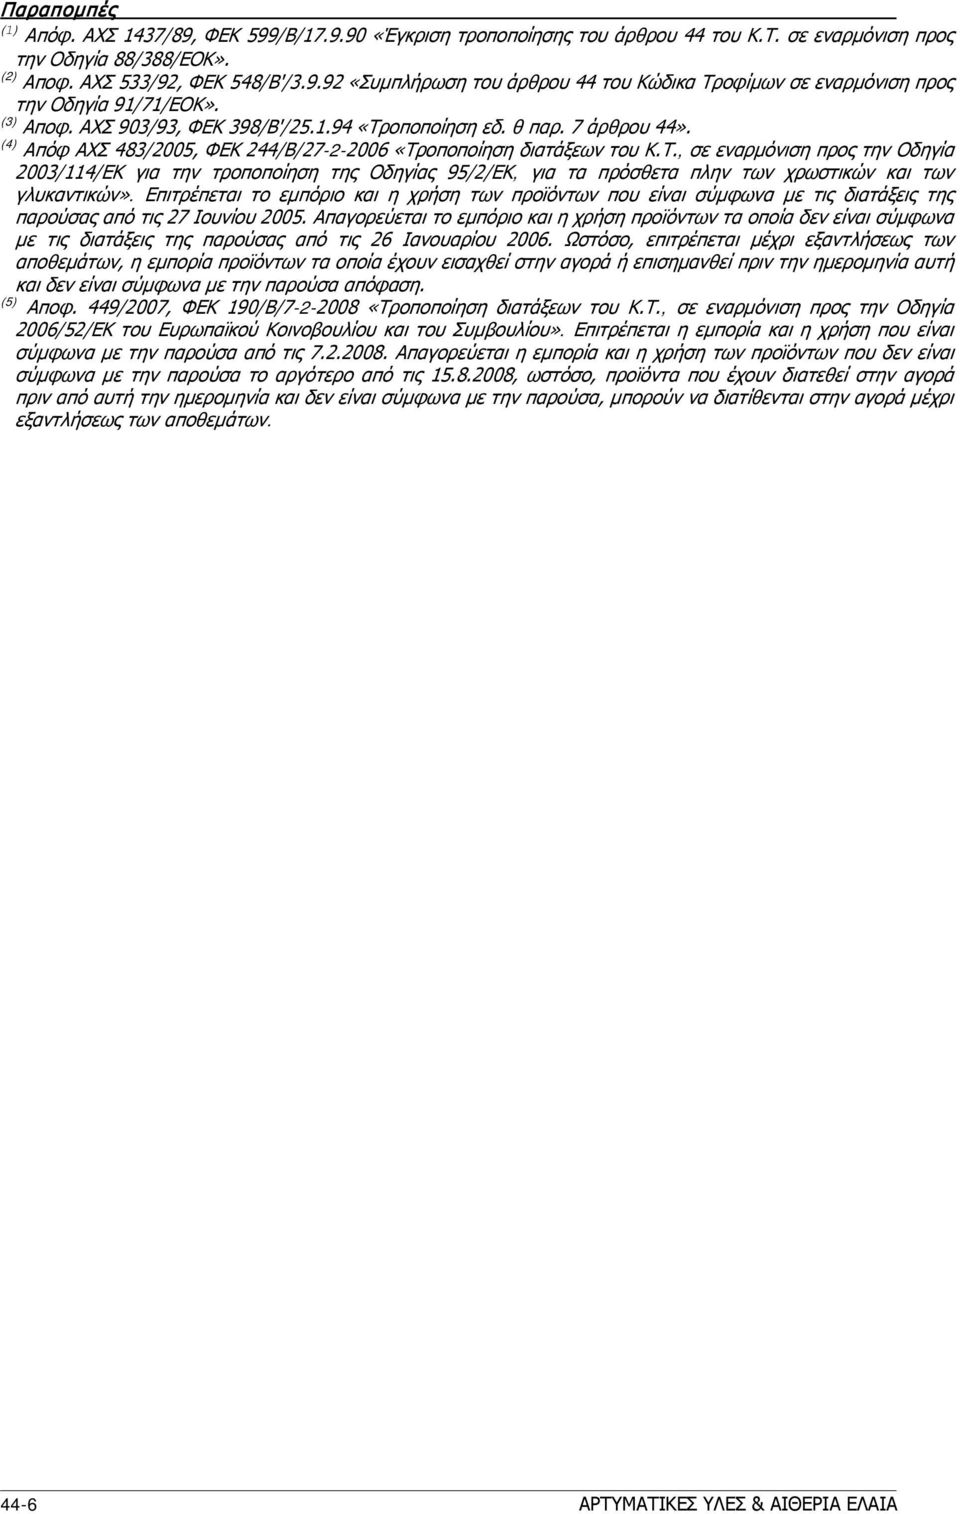 οποποίηση διατάξεων του Κ.Τ., σε εναρμόνιση προς την Οδηγία 2003/114/ΕΚ για την τροποποίηση της Οδηγίας 95/2/ΕΚ, για τα πρόσθετα πλην των χρωστικών και των γλυκαντικών».